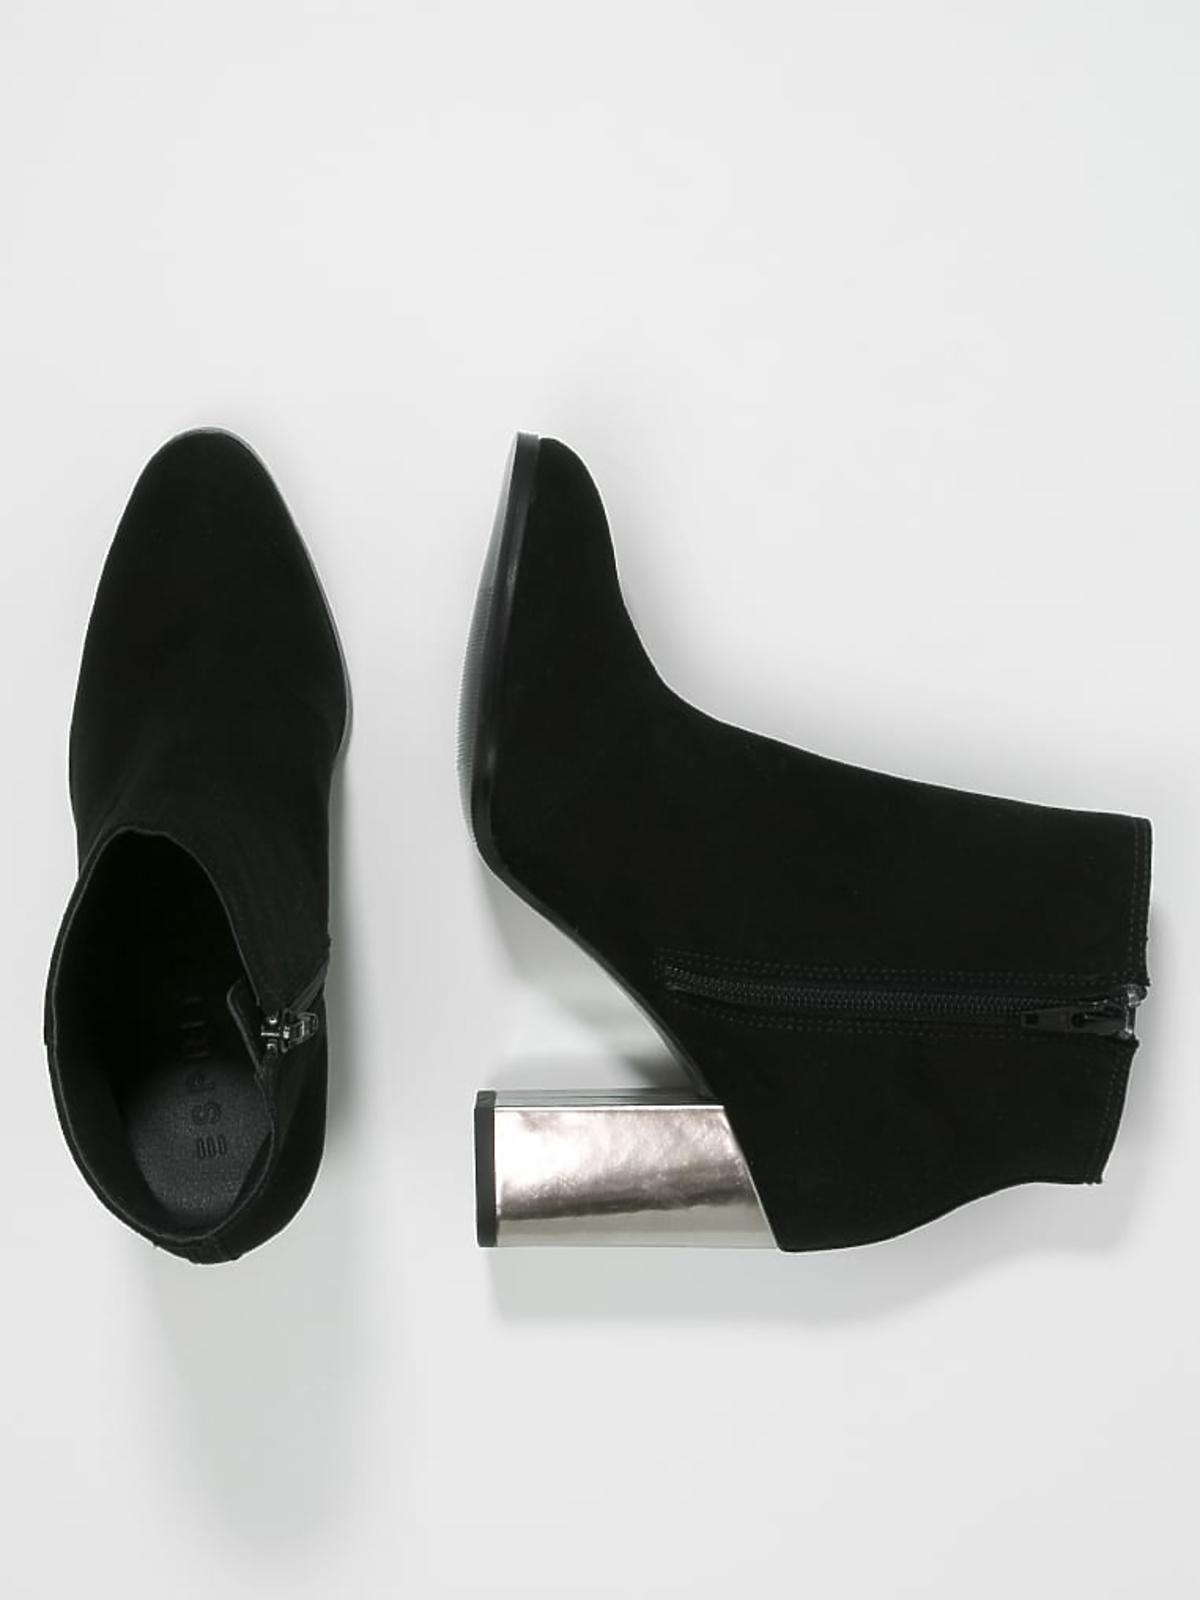 Czarne botki z ozdobnym obcasem w kolorze srebra - Esprit (Zalando) - 164,50 zł